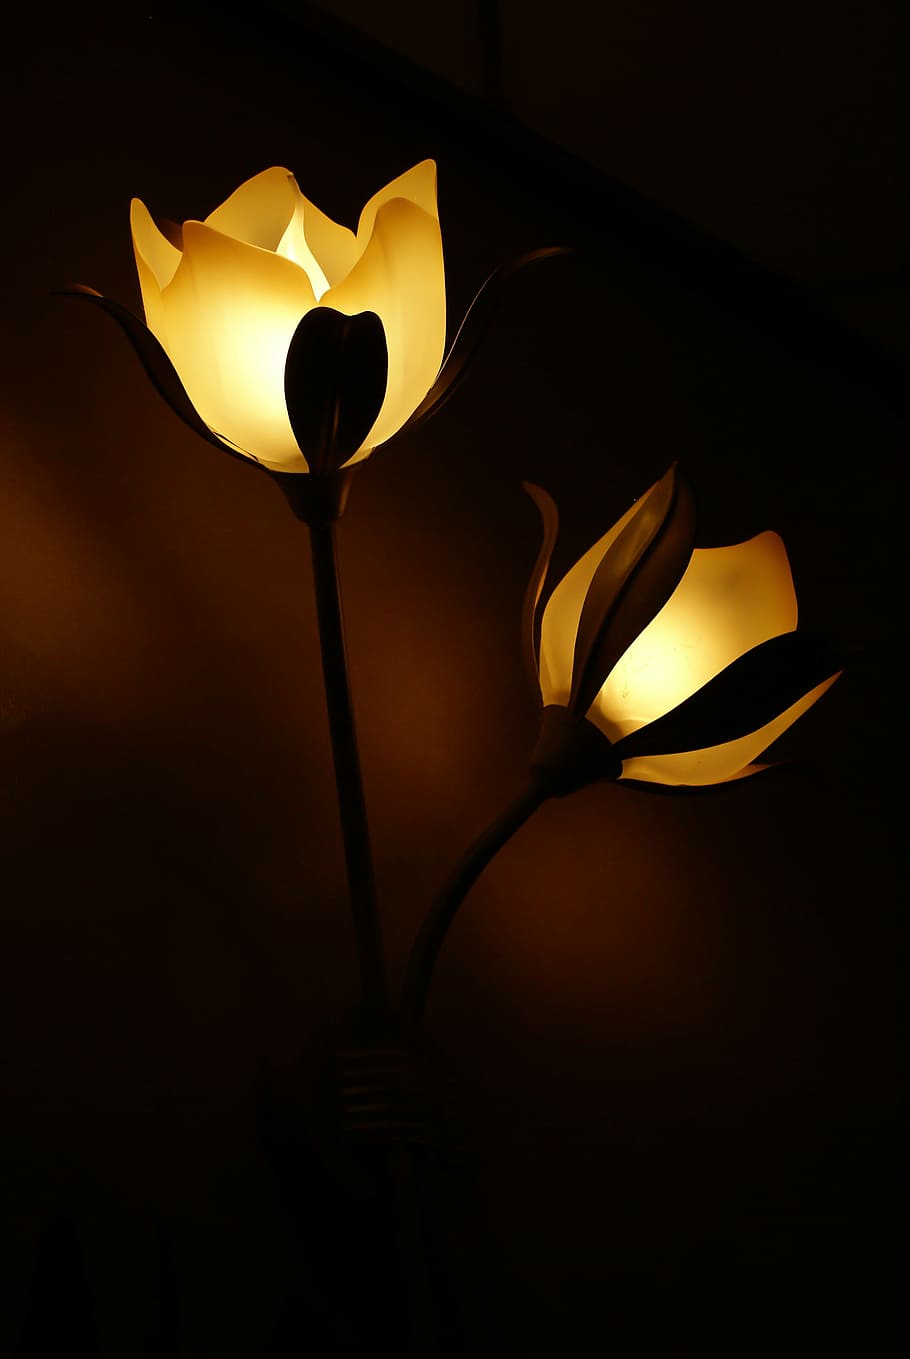 two, yellow, lighted, flower lamps, lamp, flower, light, lamps, lighting, dark